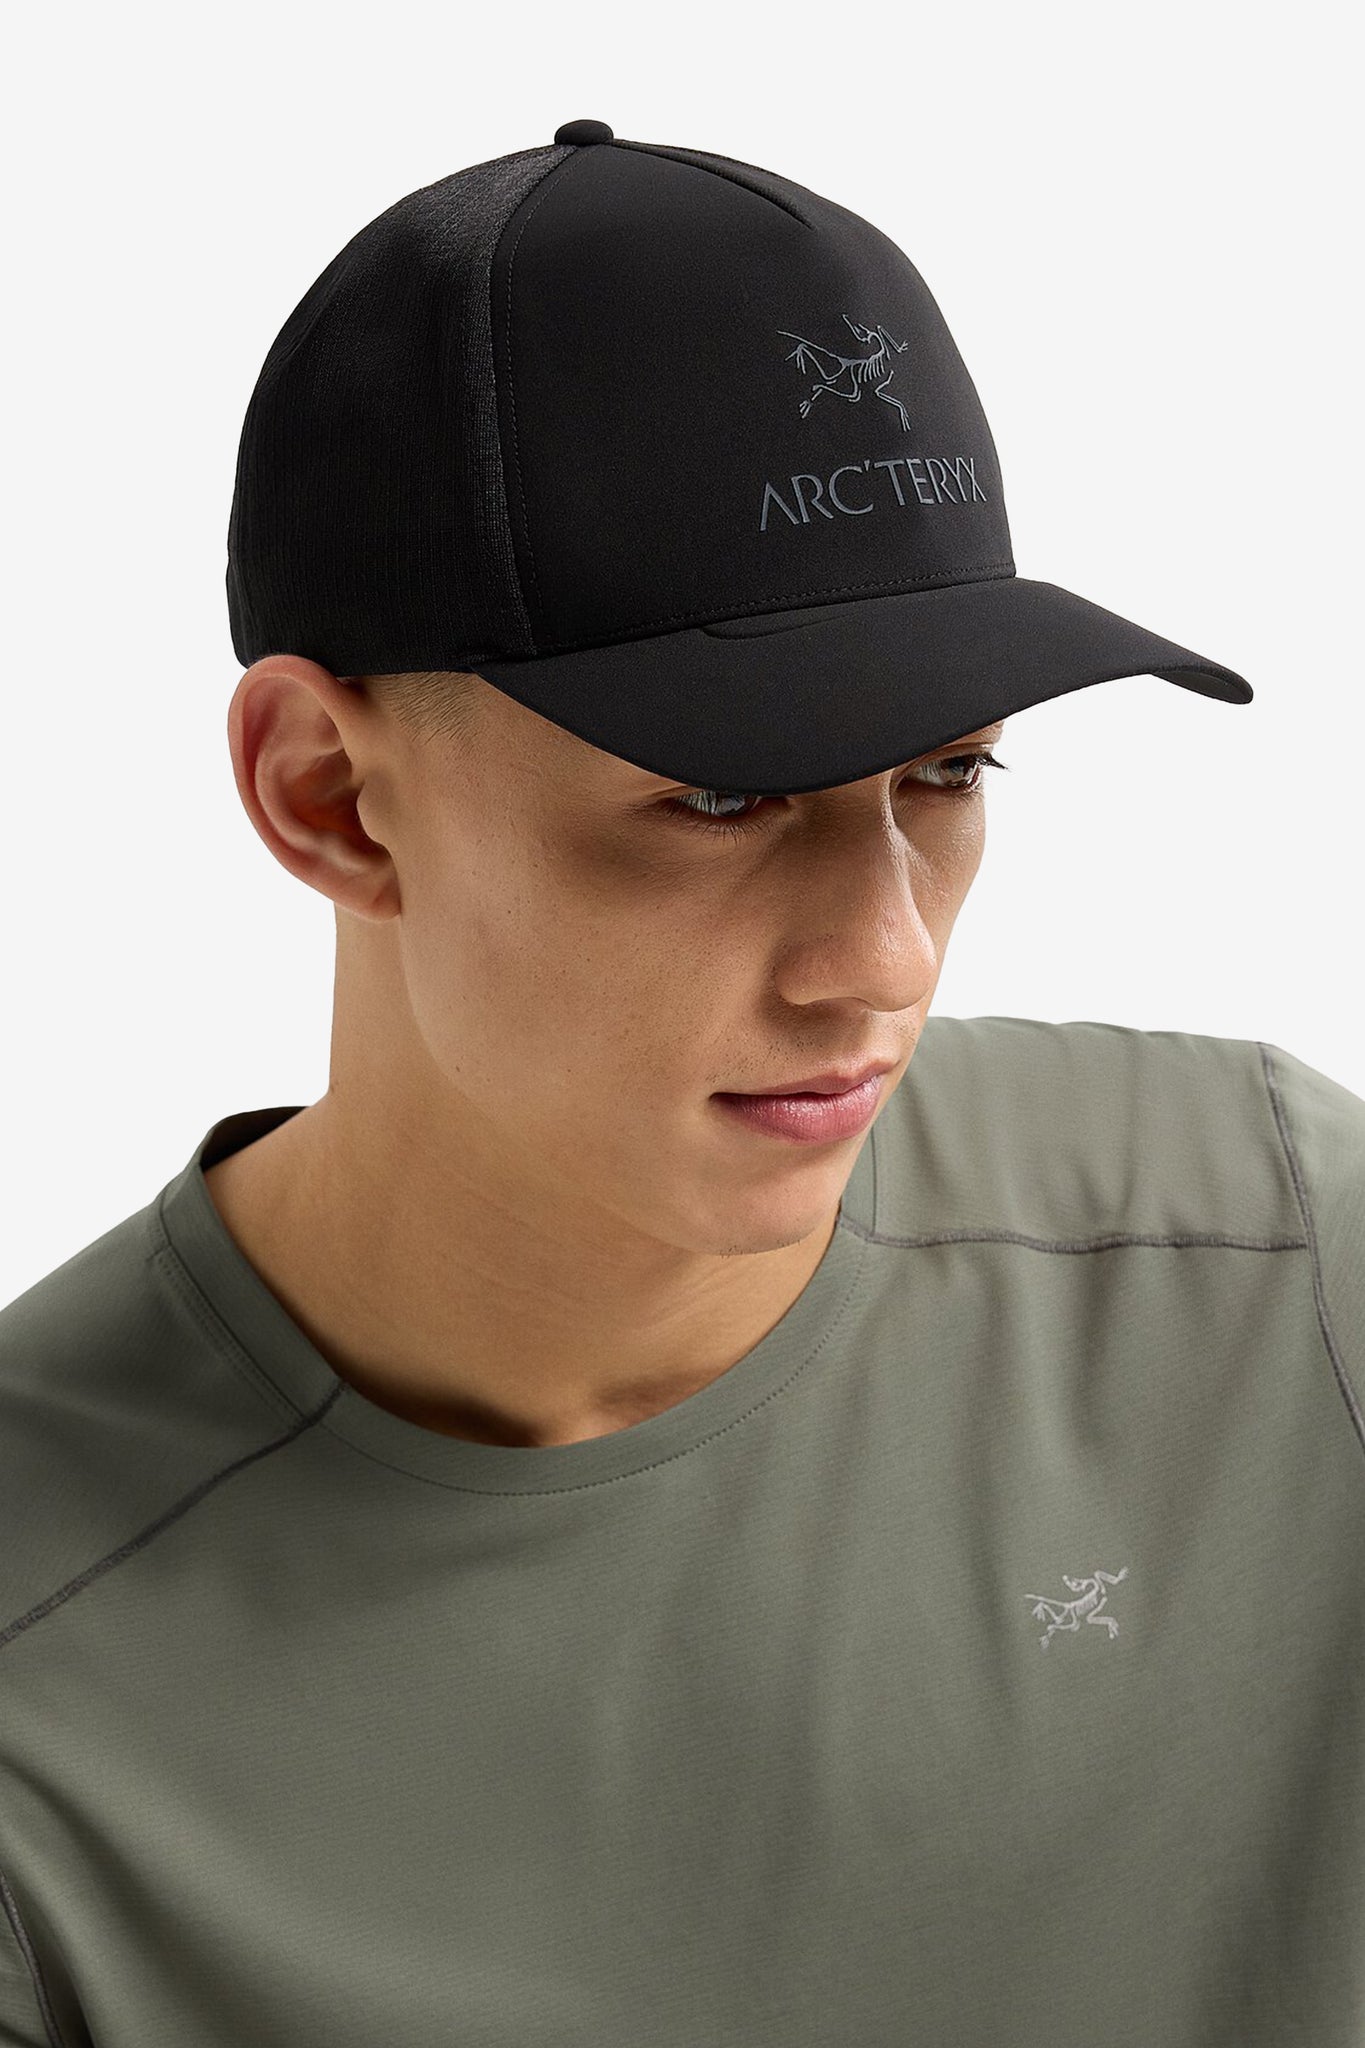 Arc'teryx Men's Bird Word Trucker Curved Hat in Black/Graphite